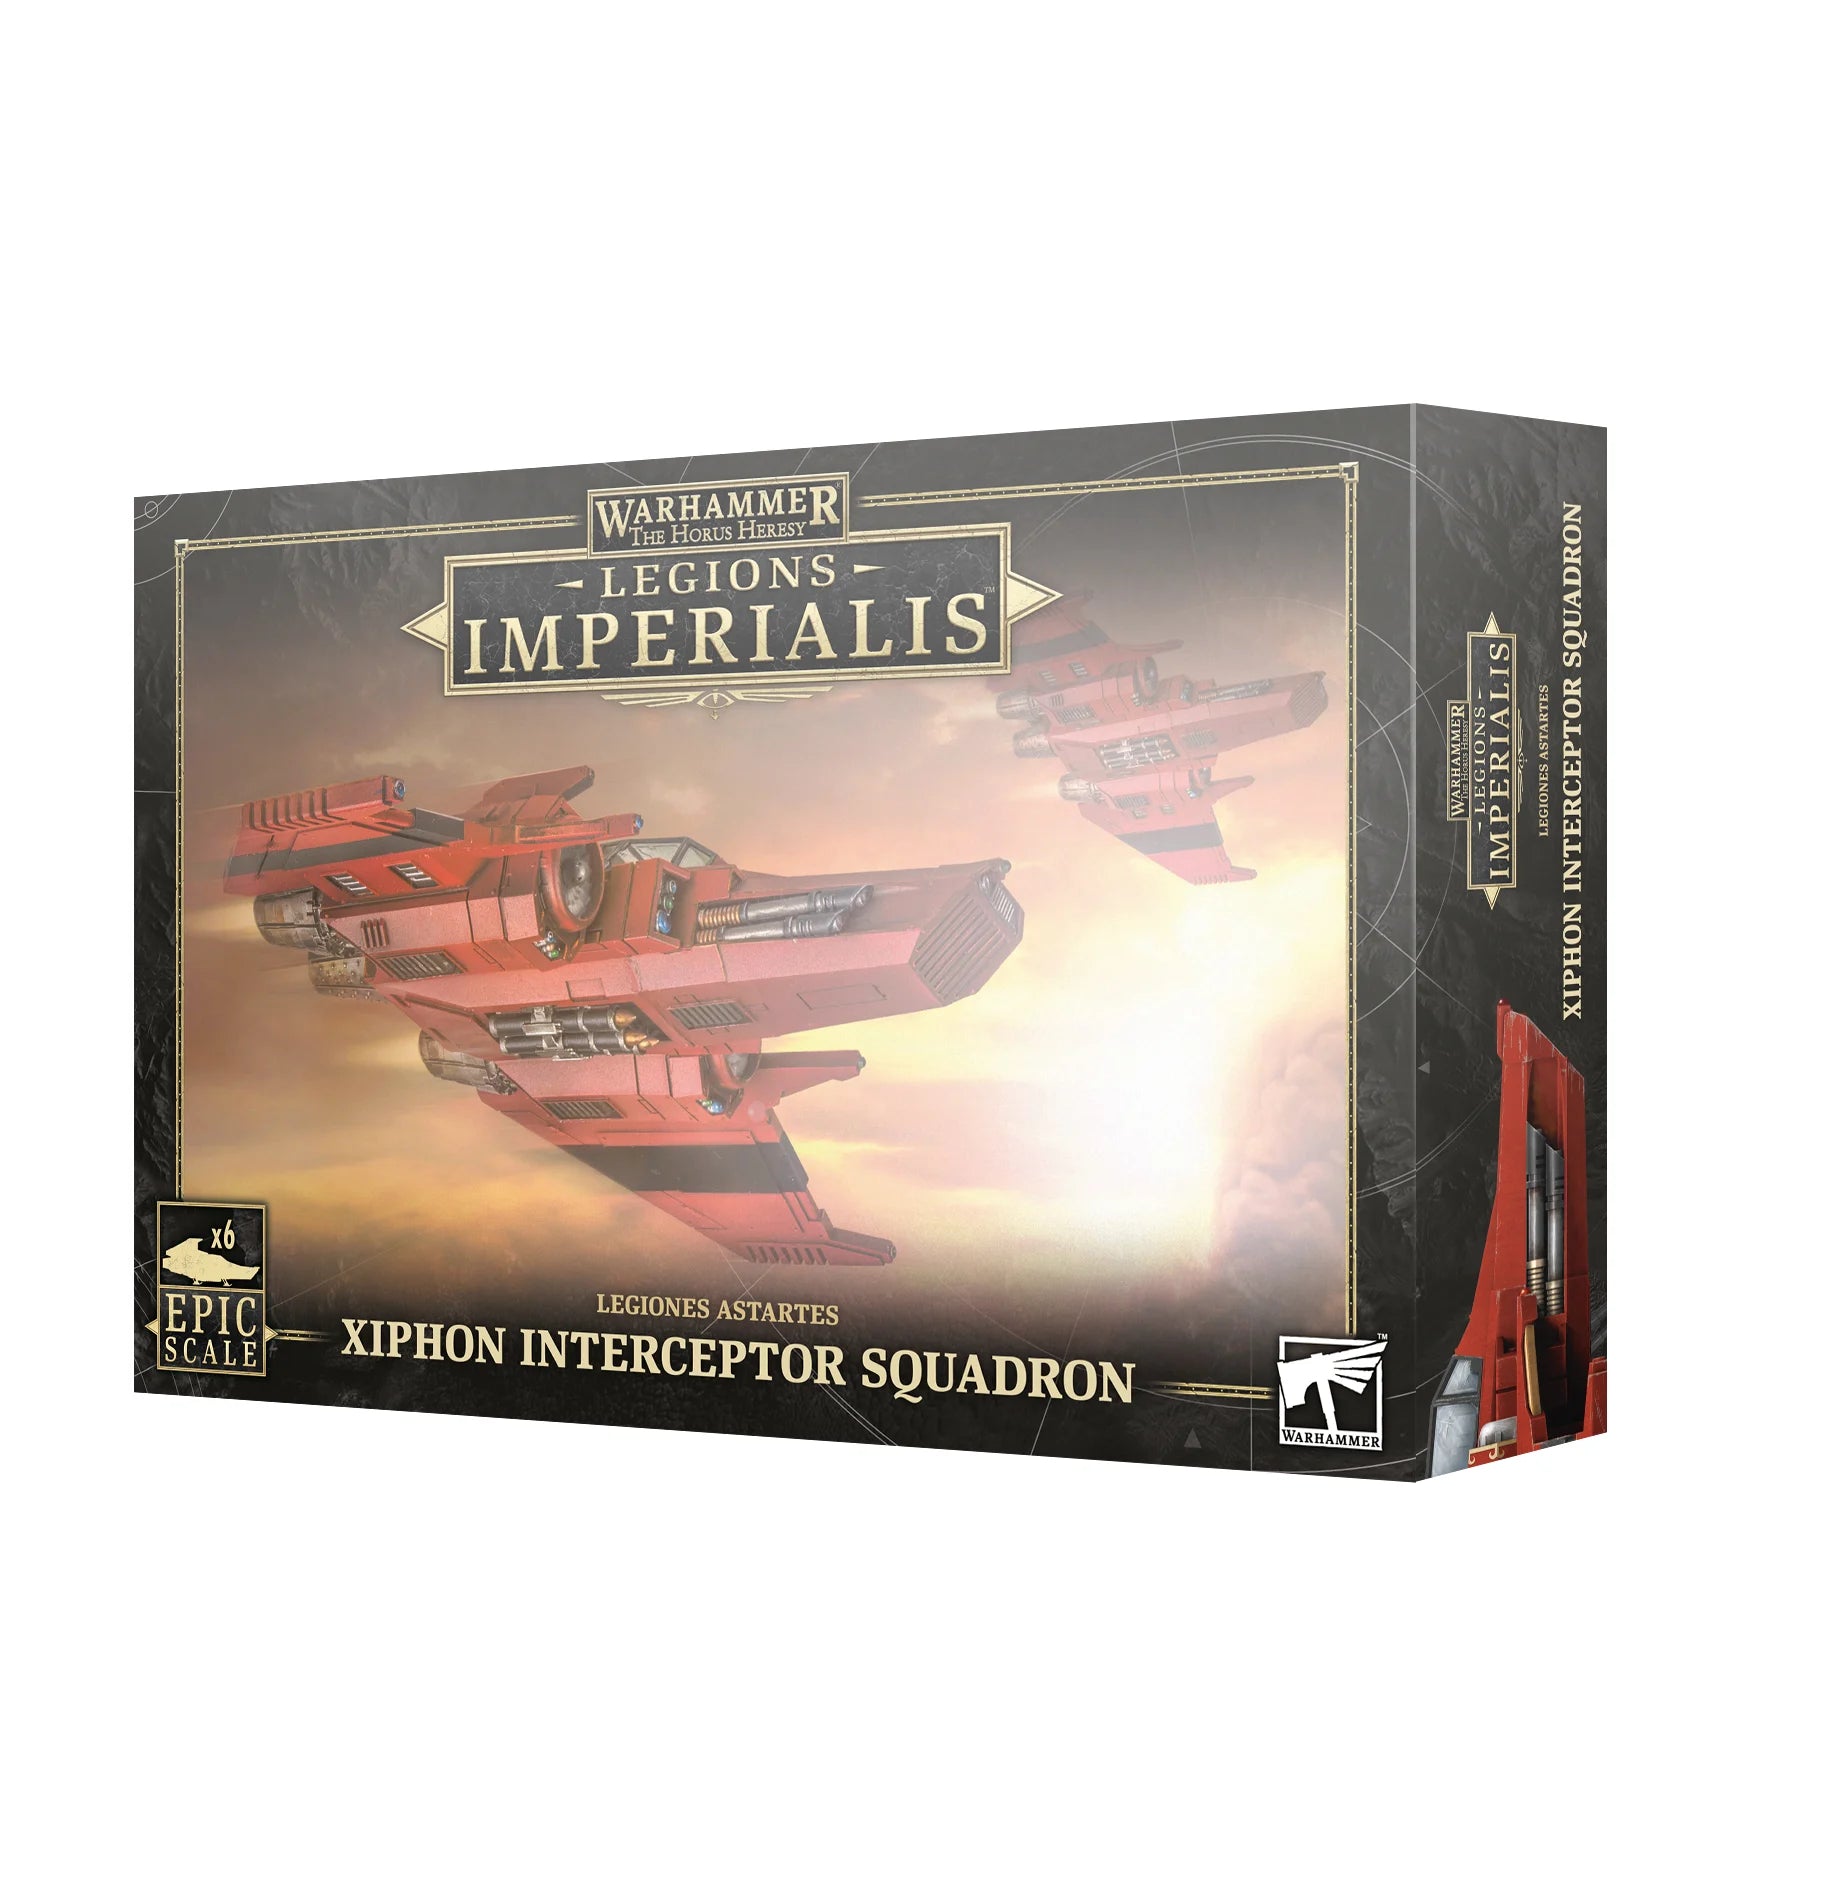 Legions Imperialis: Legiones Astartes Xiphon Interceptor Squadron